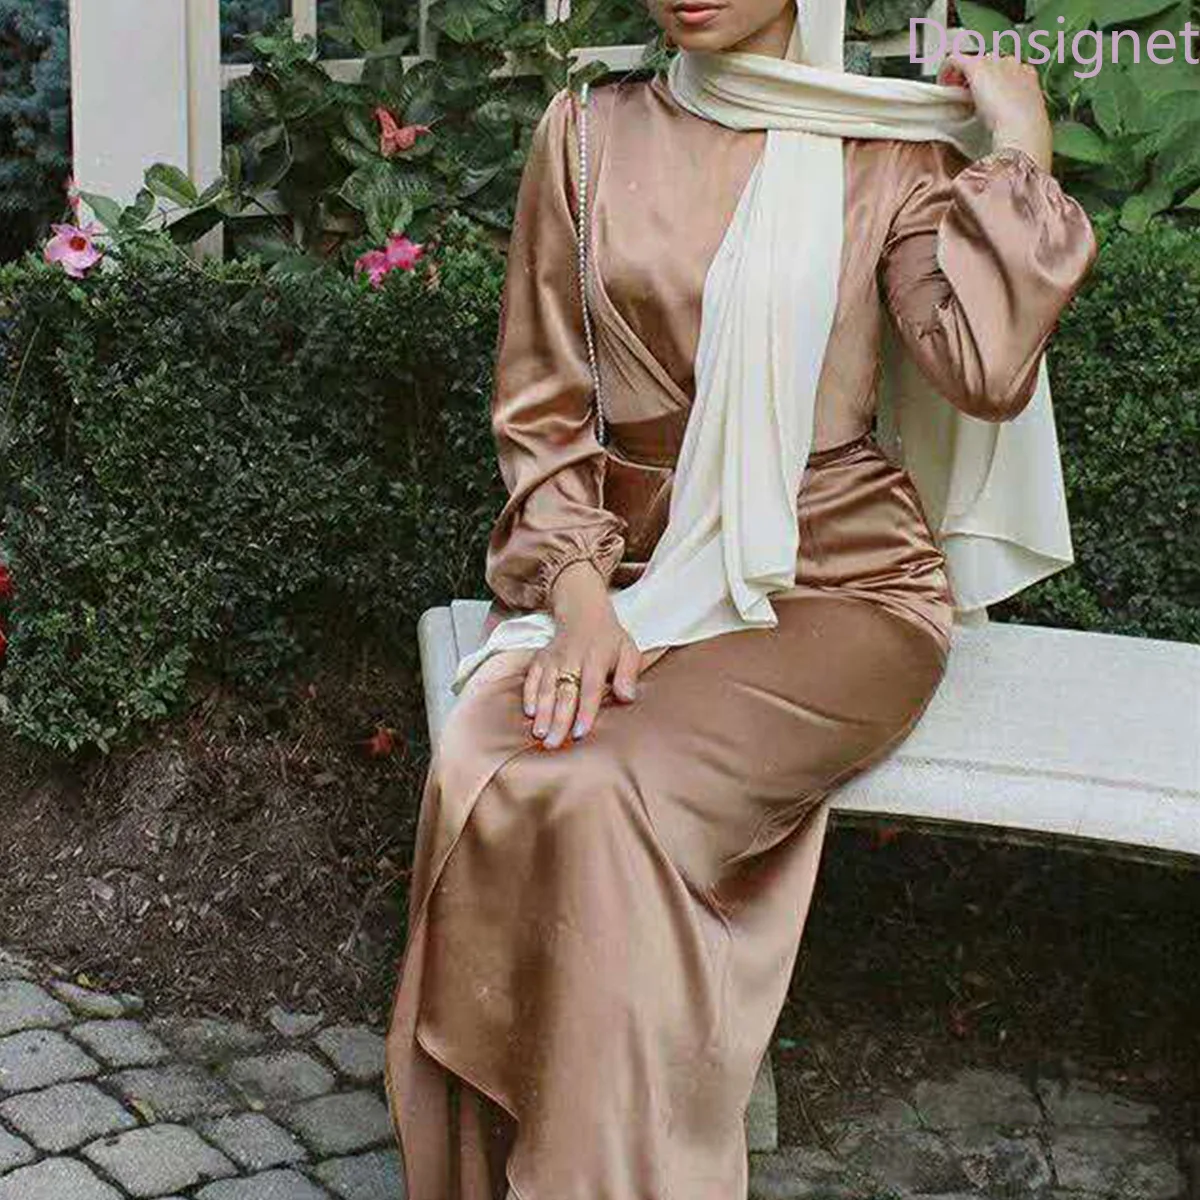 Мусульманское платье Donsignet женское мусульманское модное обманка из двух частей